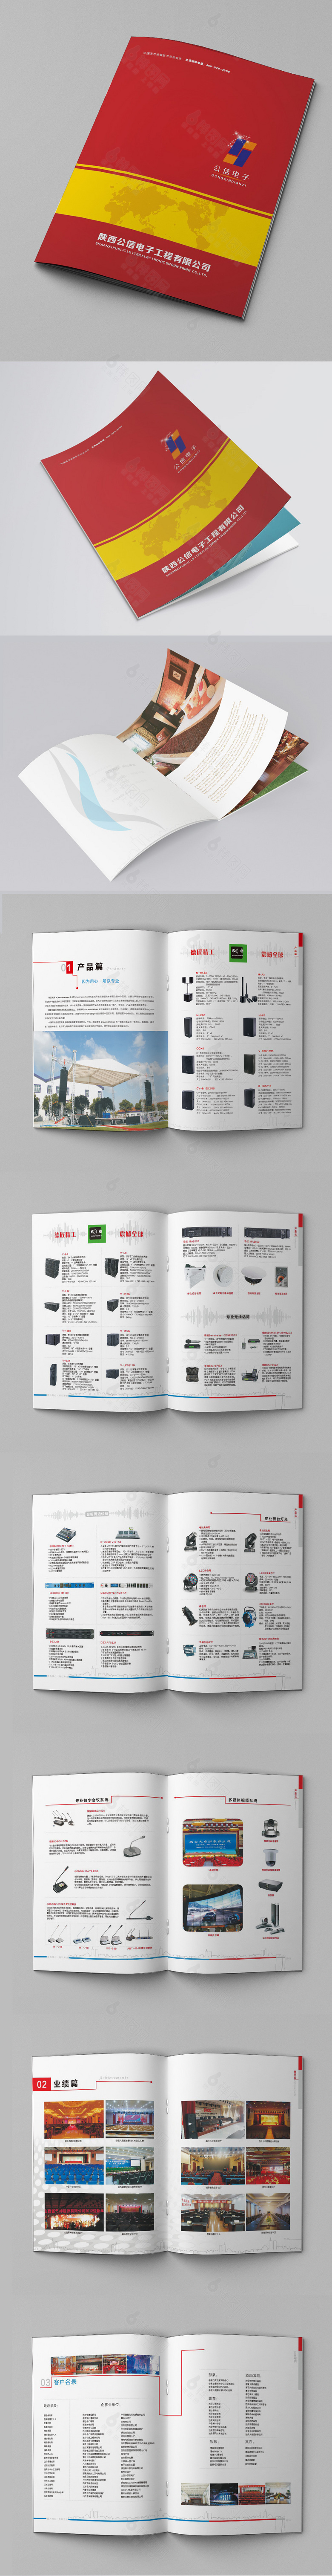 电子科技产品画册设计